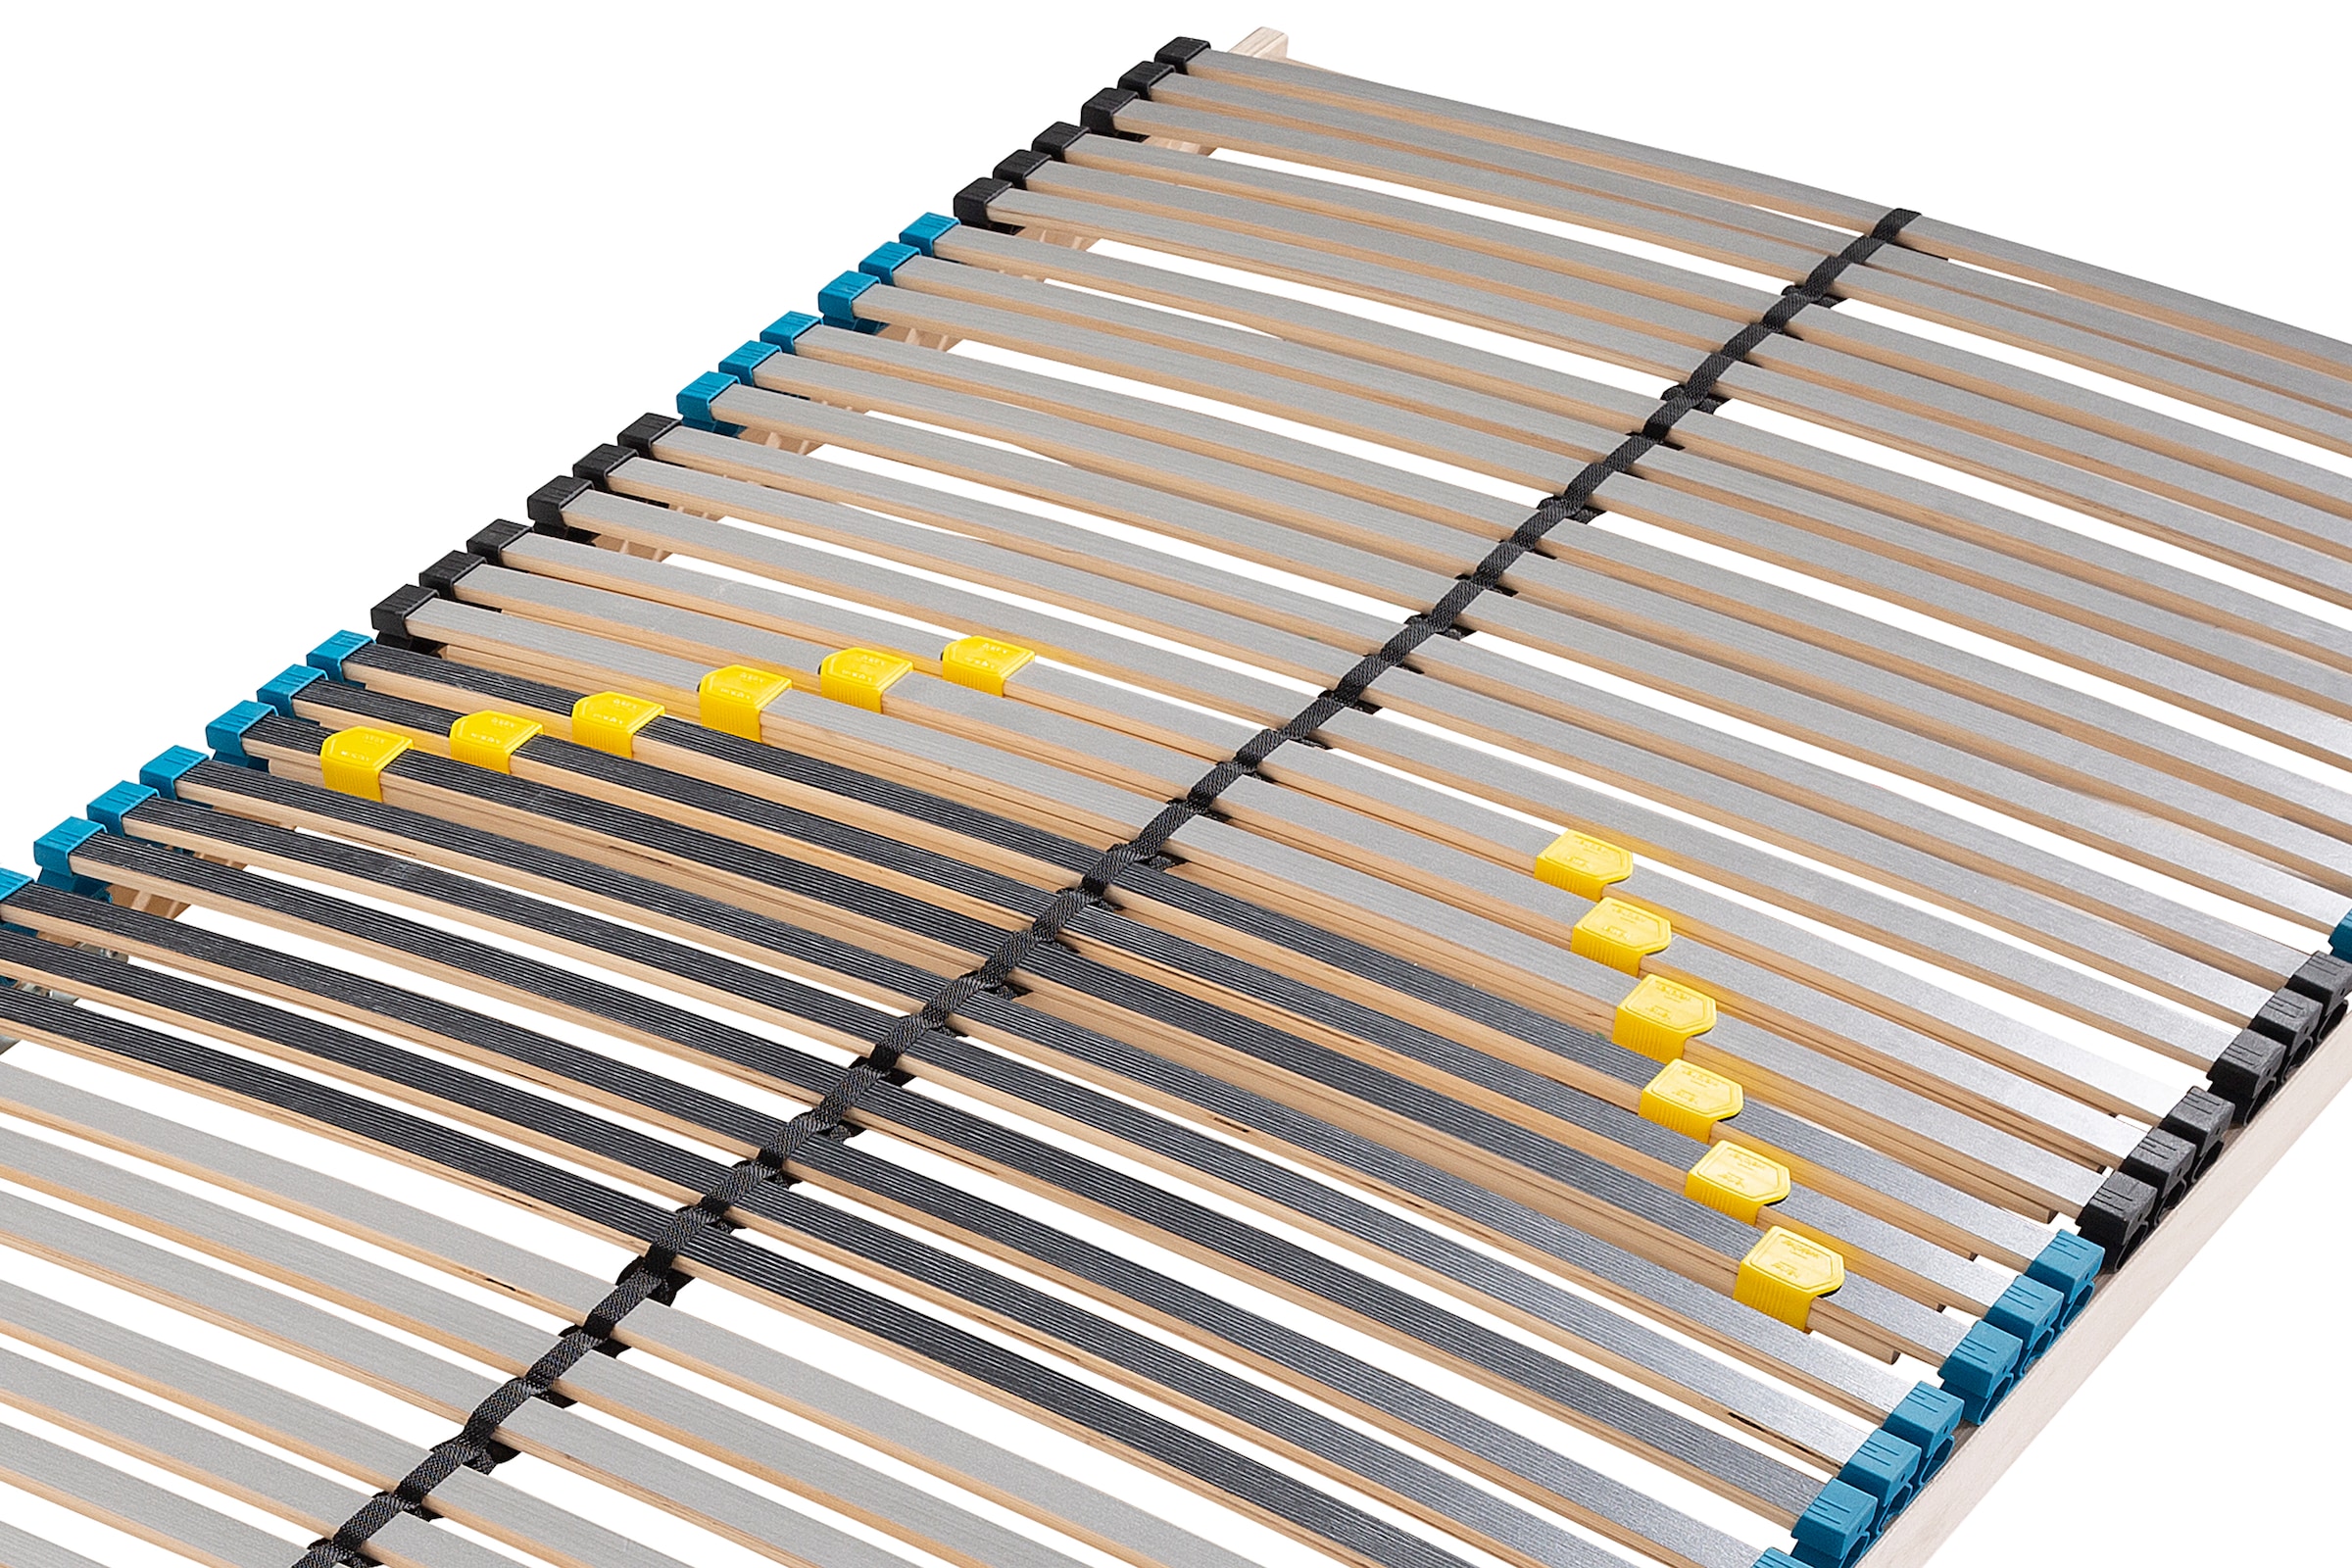 Älgdröm Lattenrost »Sommen NV«, Lattenrost zur Selbstmontage, 42 flexible und elastische Federleisten